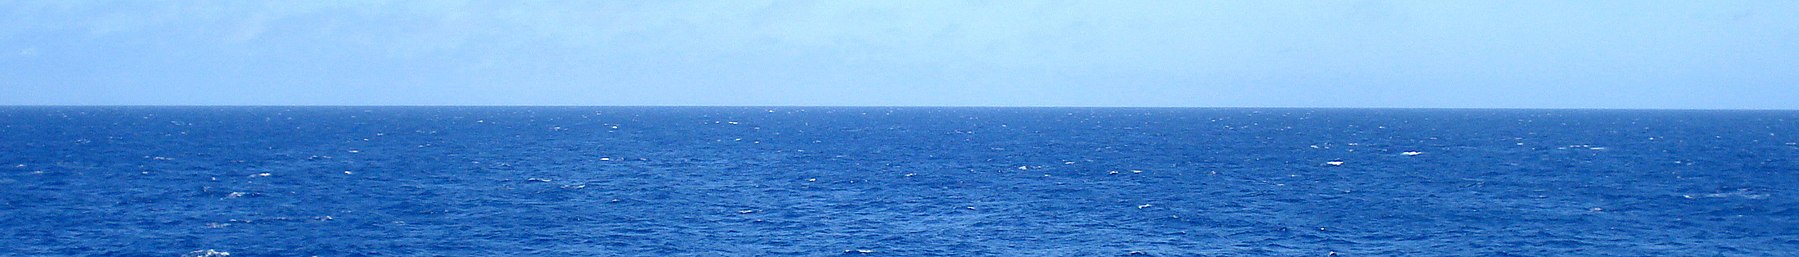 Sininen sininen meri - panoraama (rajattu) .jpg